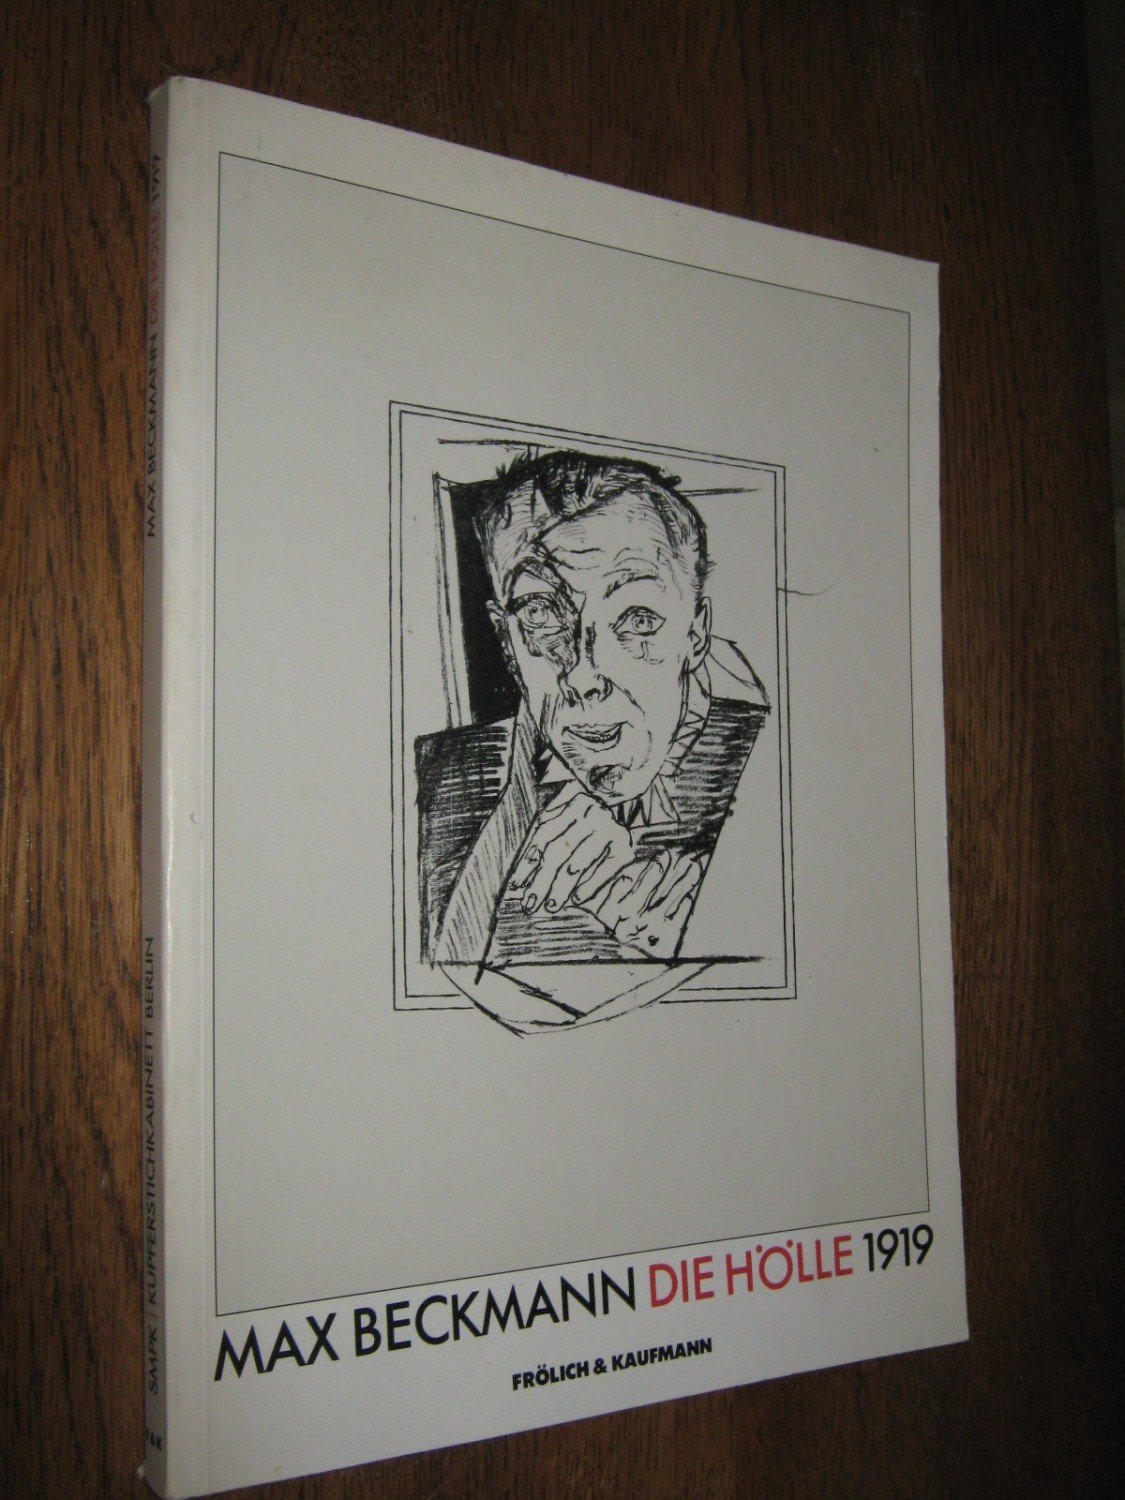 Max Beckmann Die Holle 1919 Max Beckmann Buch Gebraucht Kaufen A027a6w801zzi